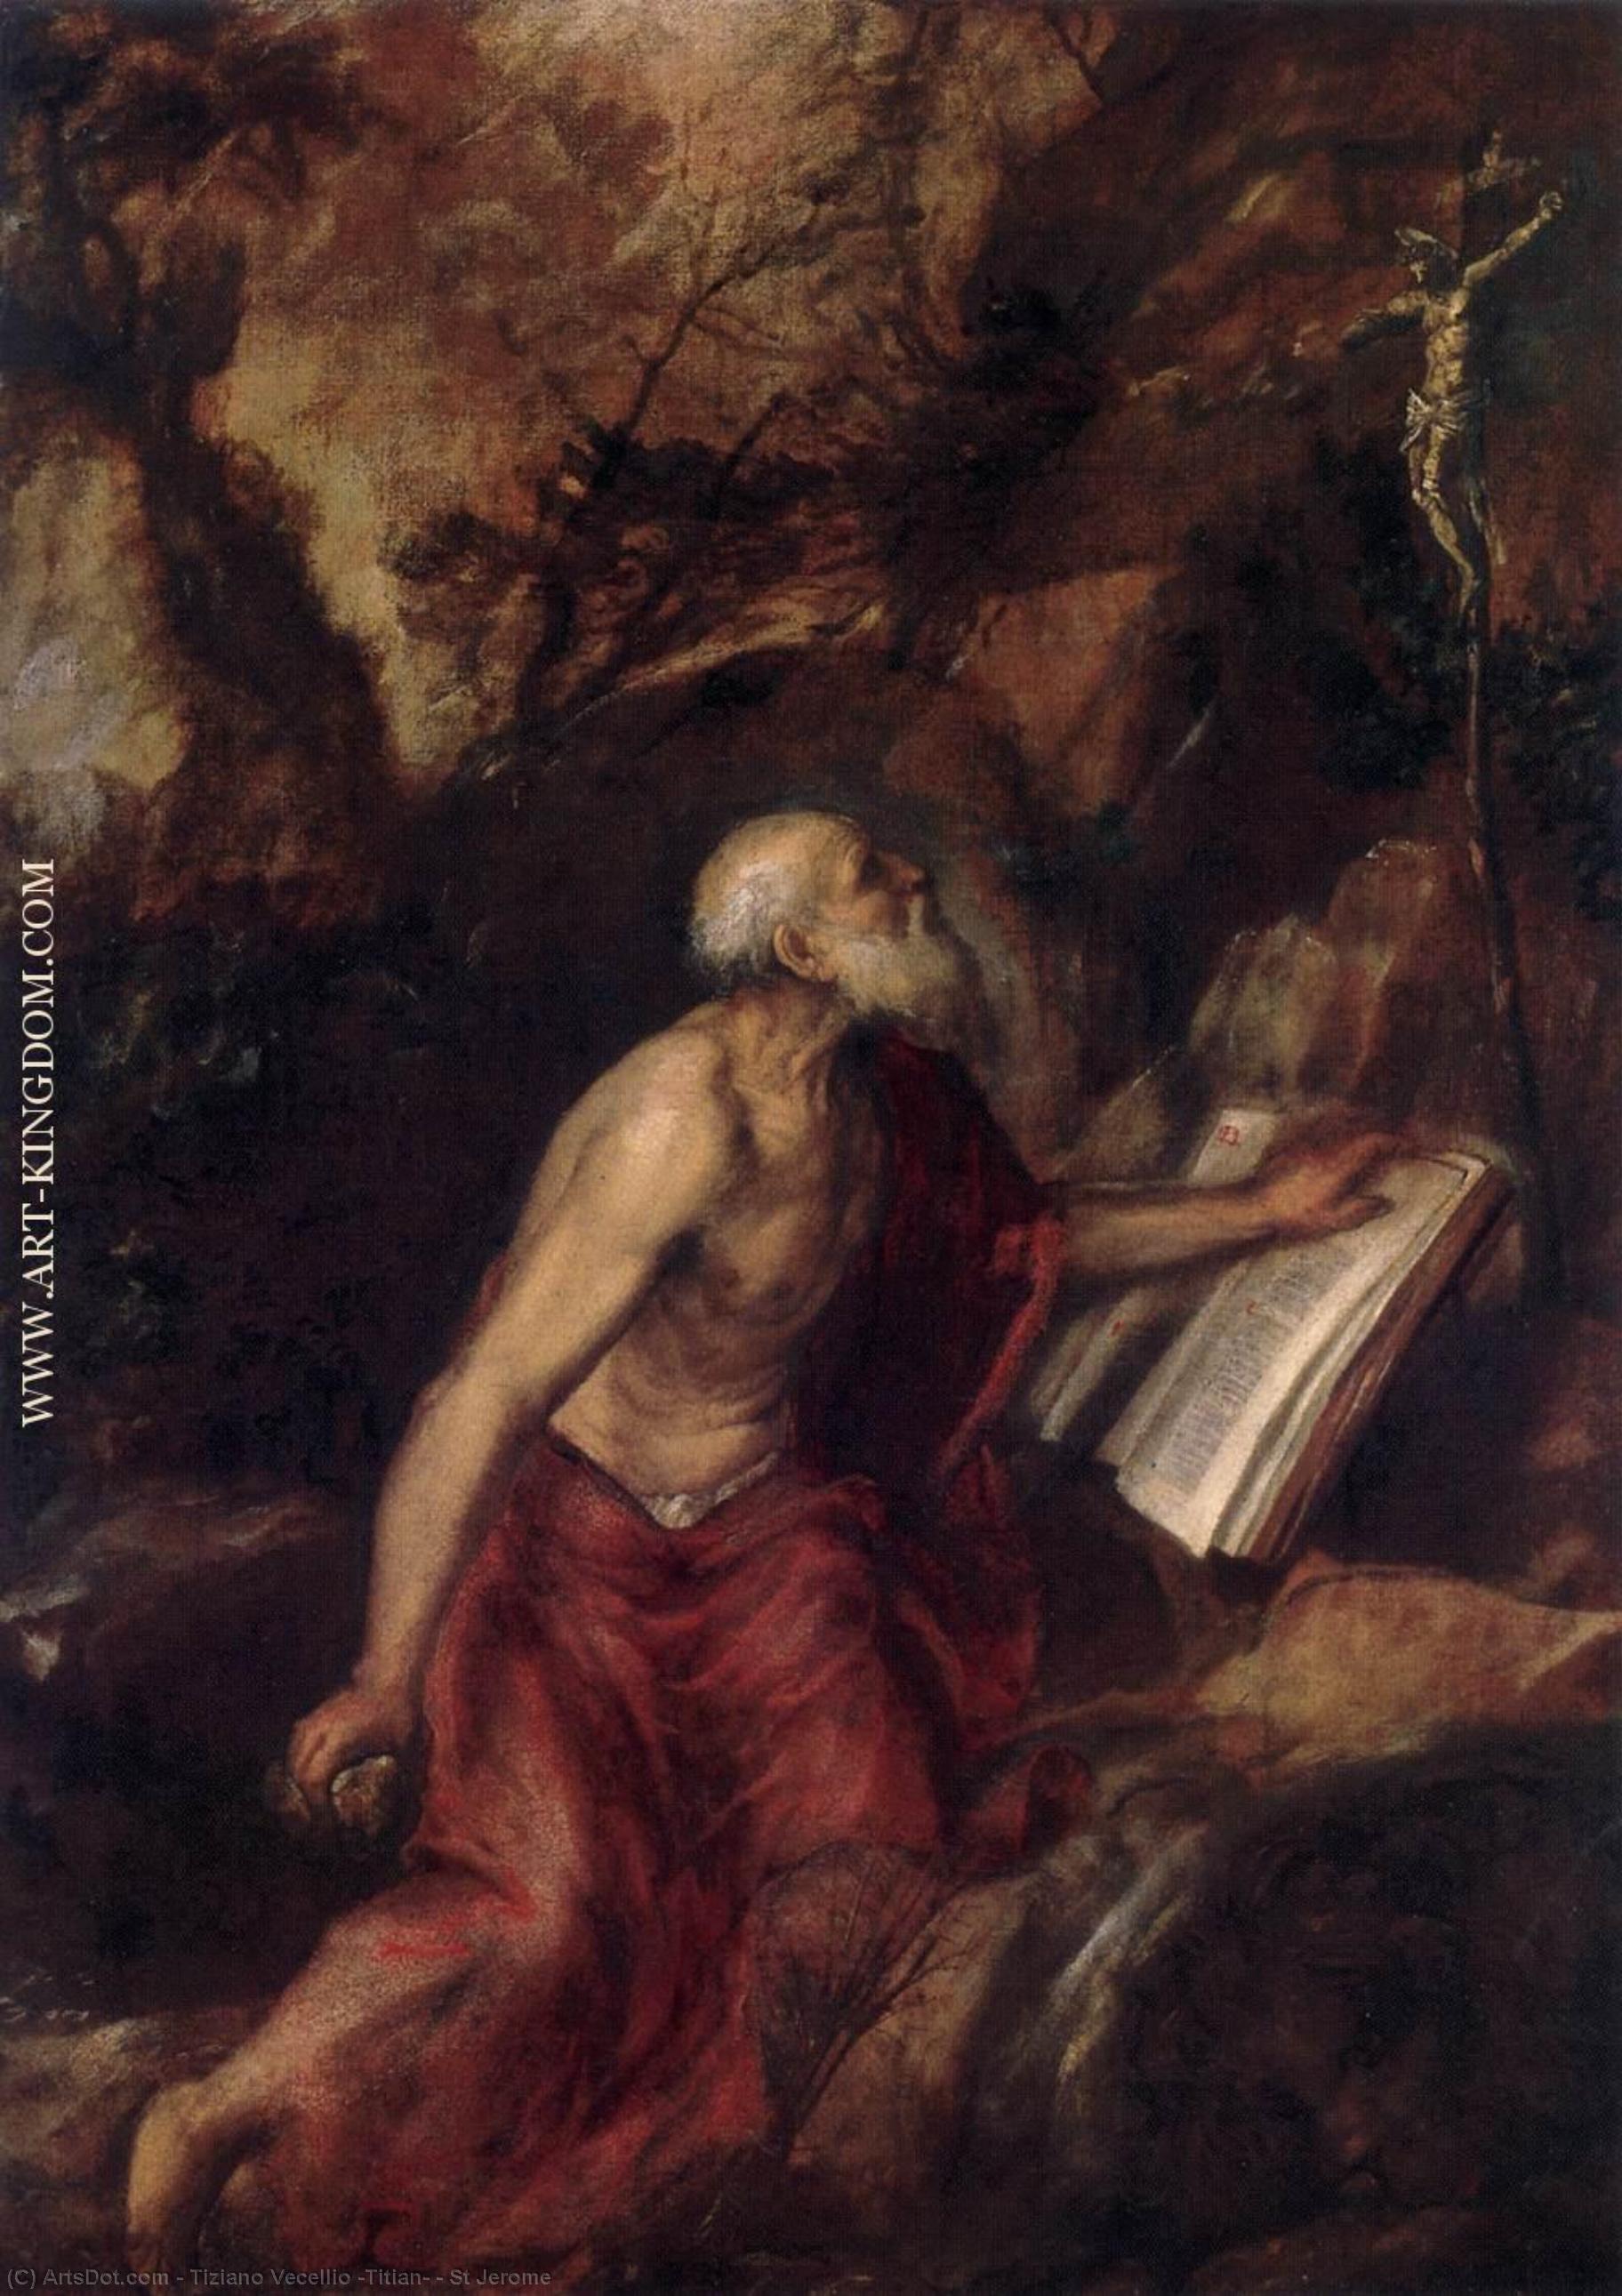 WikiOO.org - Enciklopedija dailės - Tapyba, meno kuriniai Tiziano Vecellio (Titian) - St Jerome